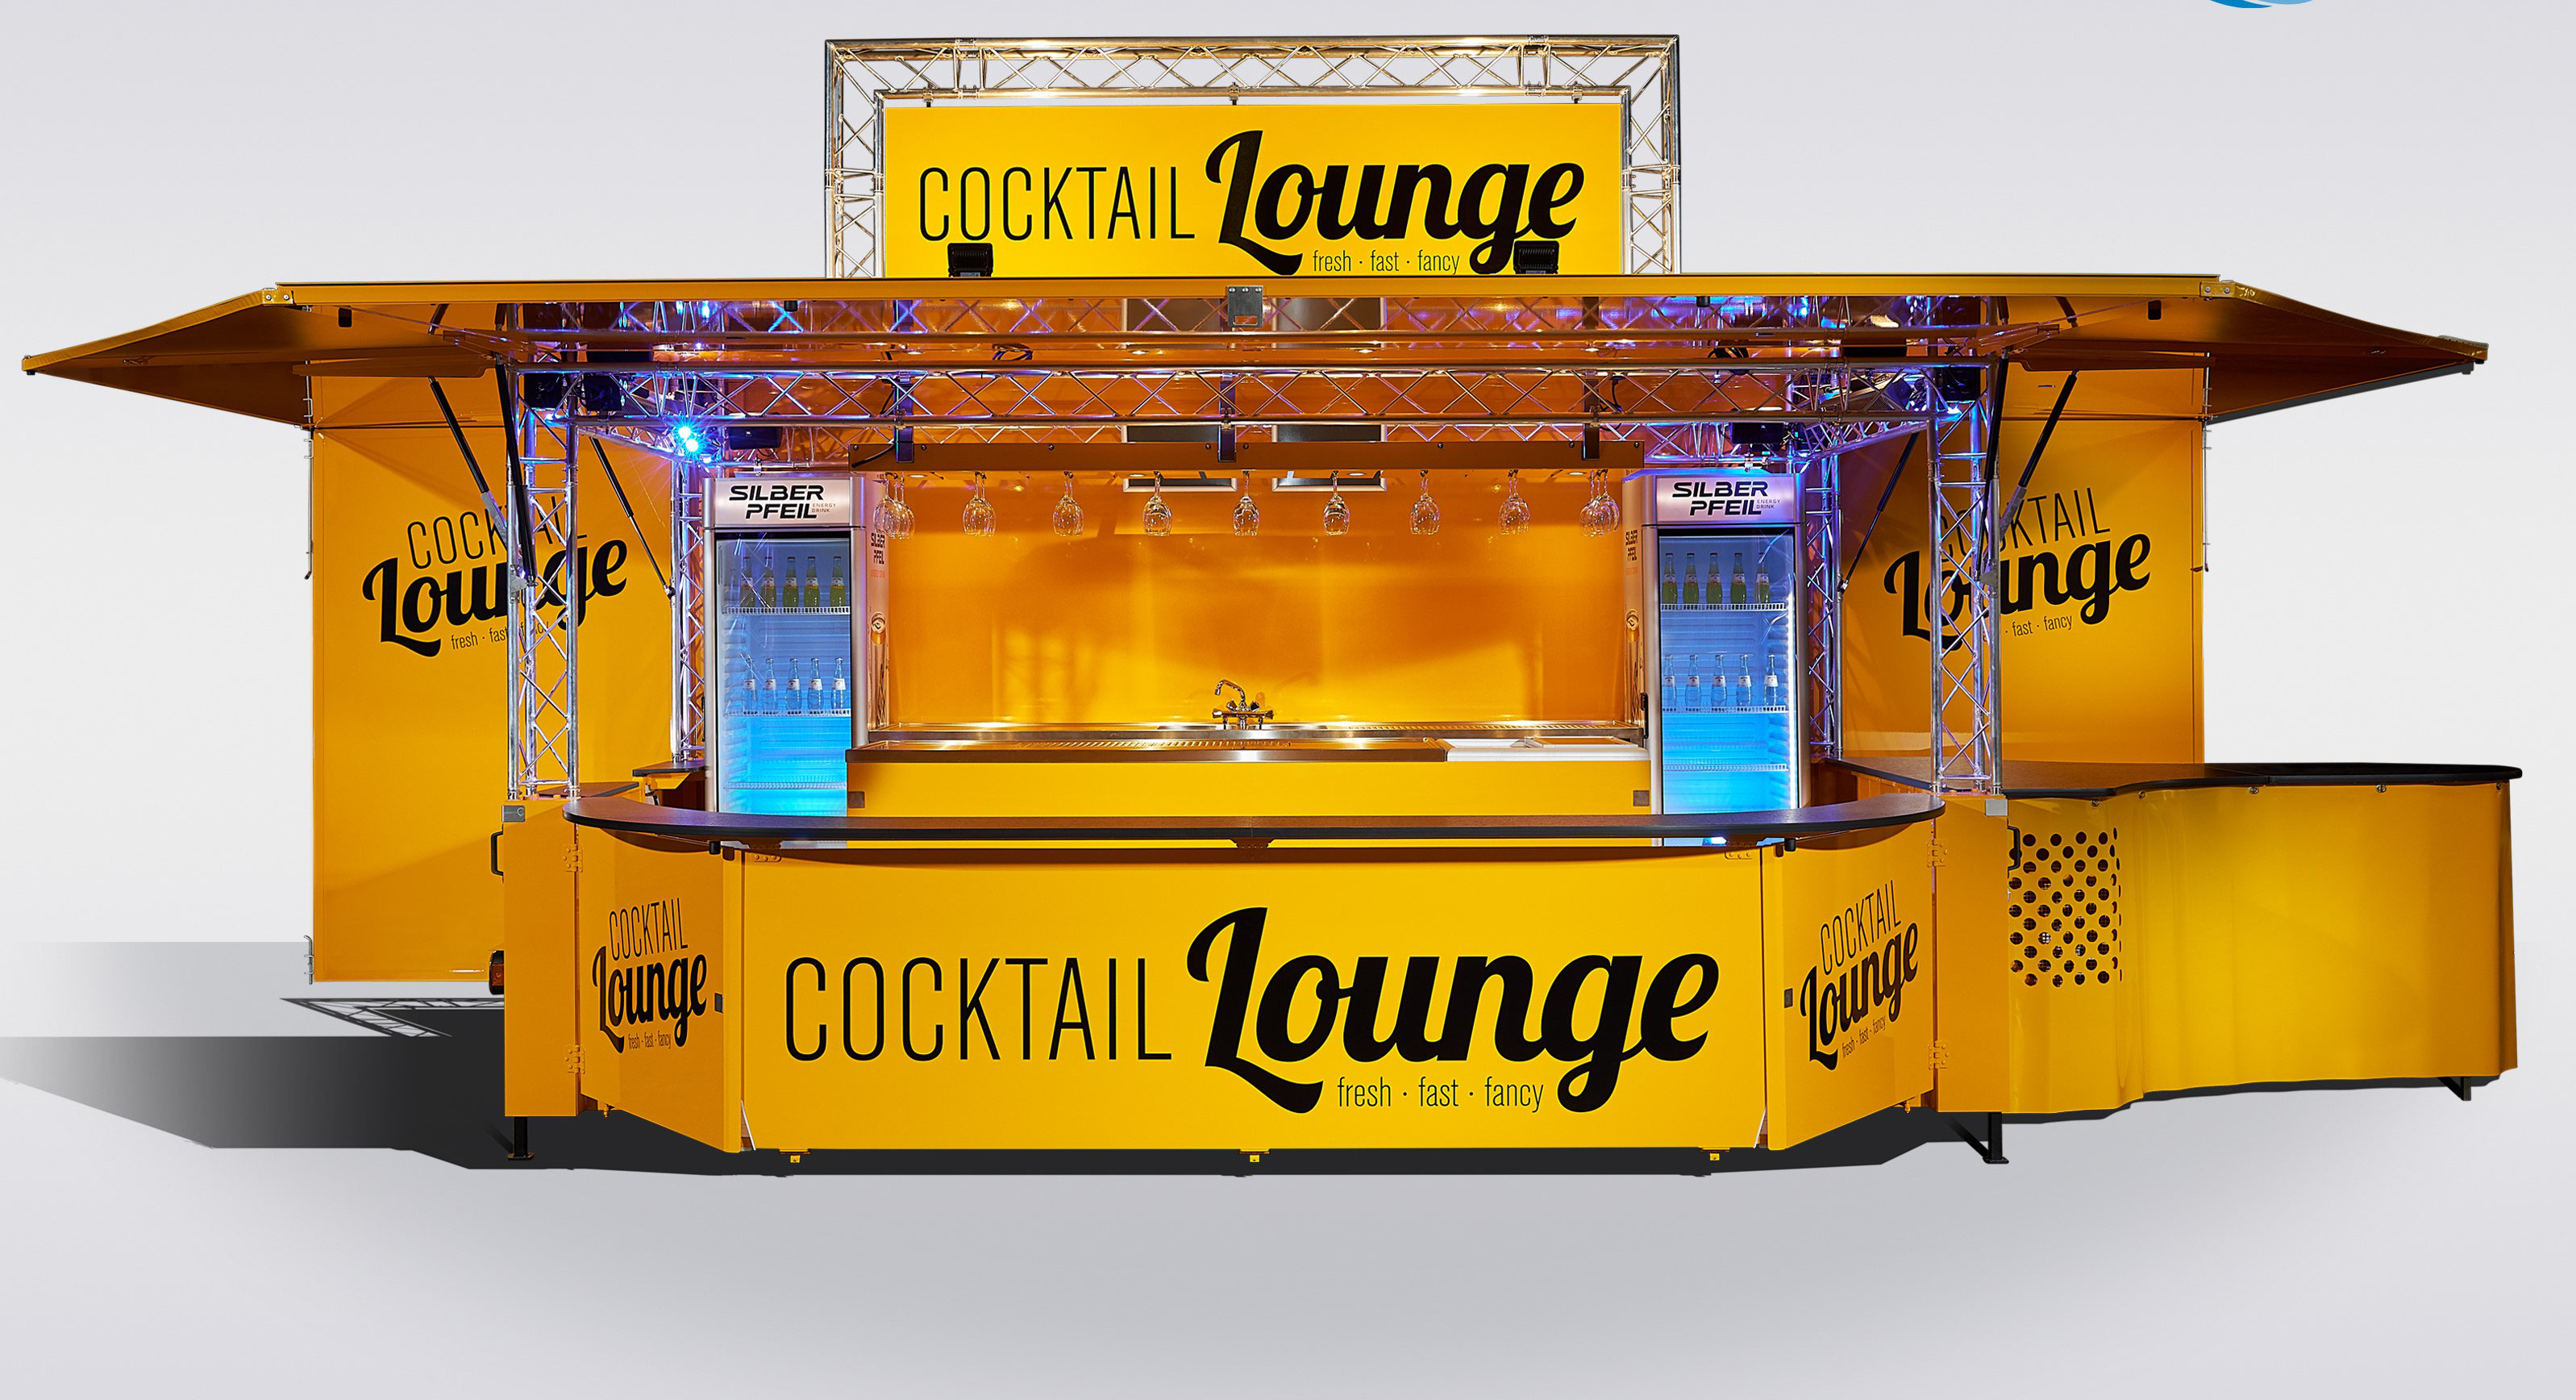 (c) Cocktail-lounge.de